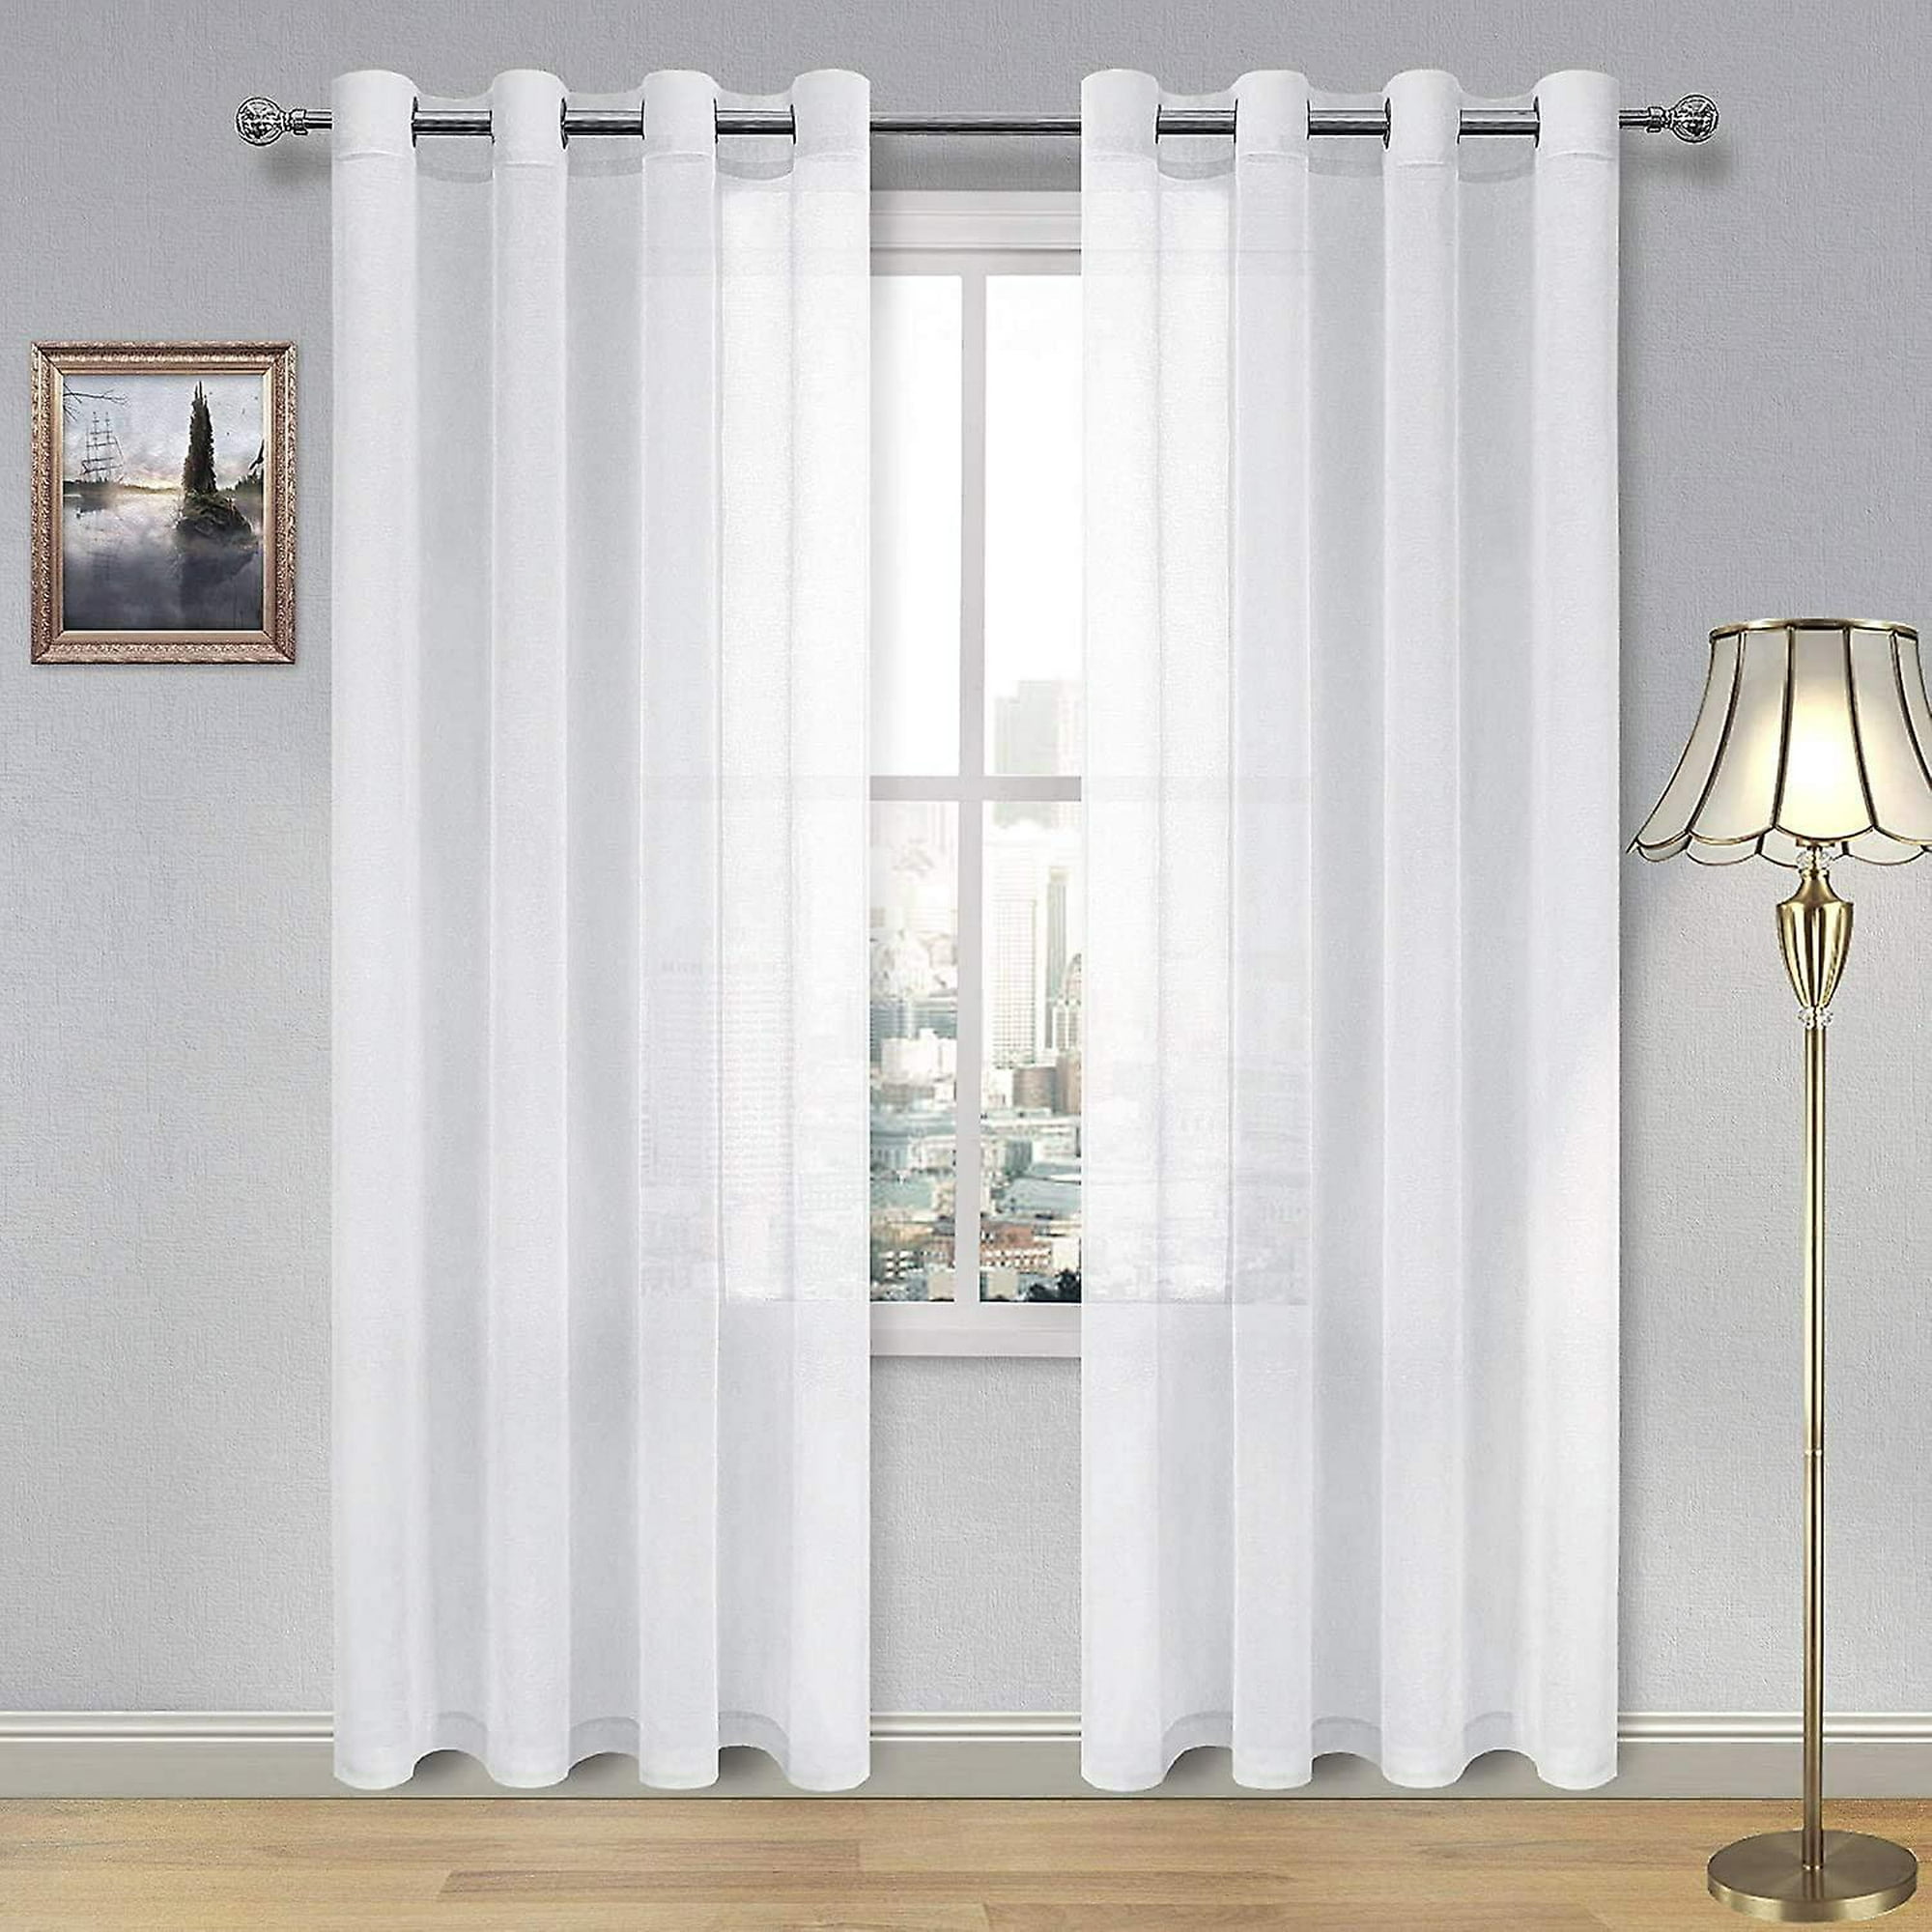  Fcosie Cortinas blancas semitransparentes para sala de estar,  cortinas y cortinas de lino reductoras de luz para dormitorio, hilo  esponjoso, paneles transparentes con ojales, tratamientos de ventana de  gasa, 72 pulgadas